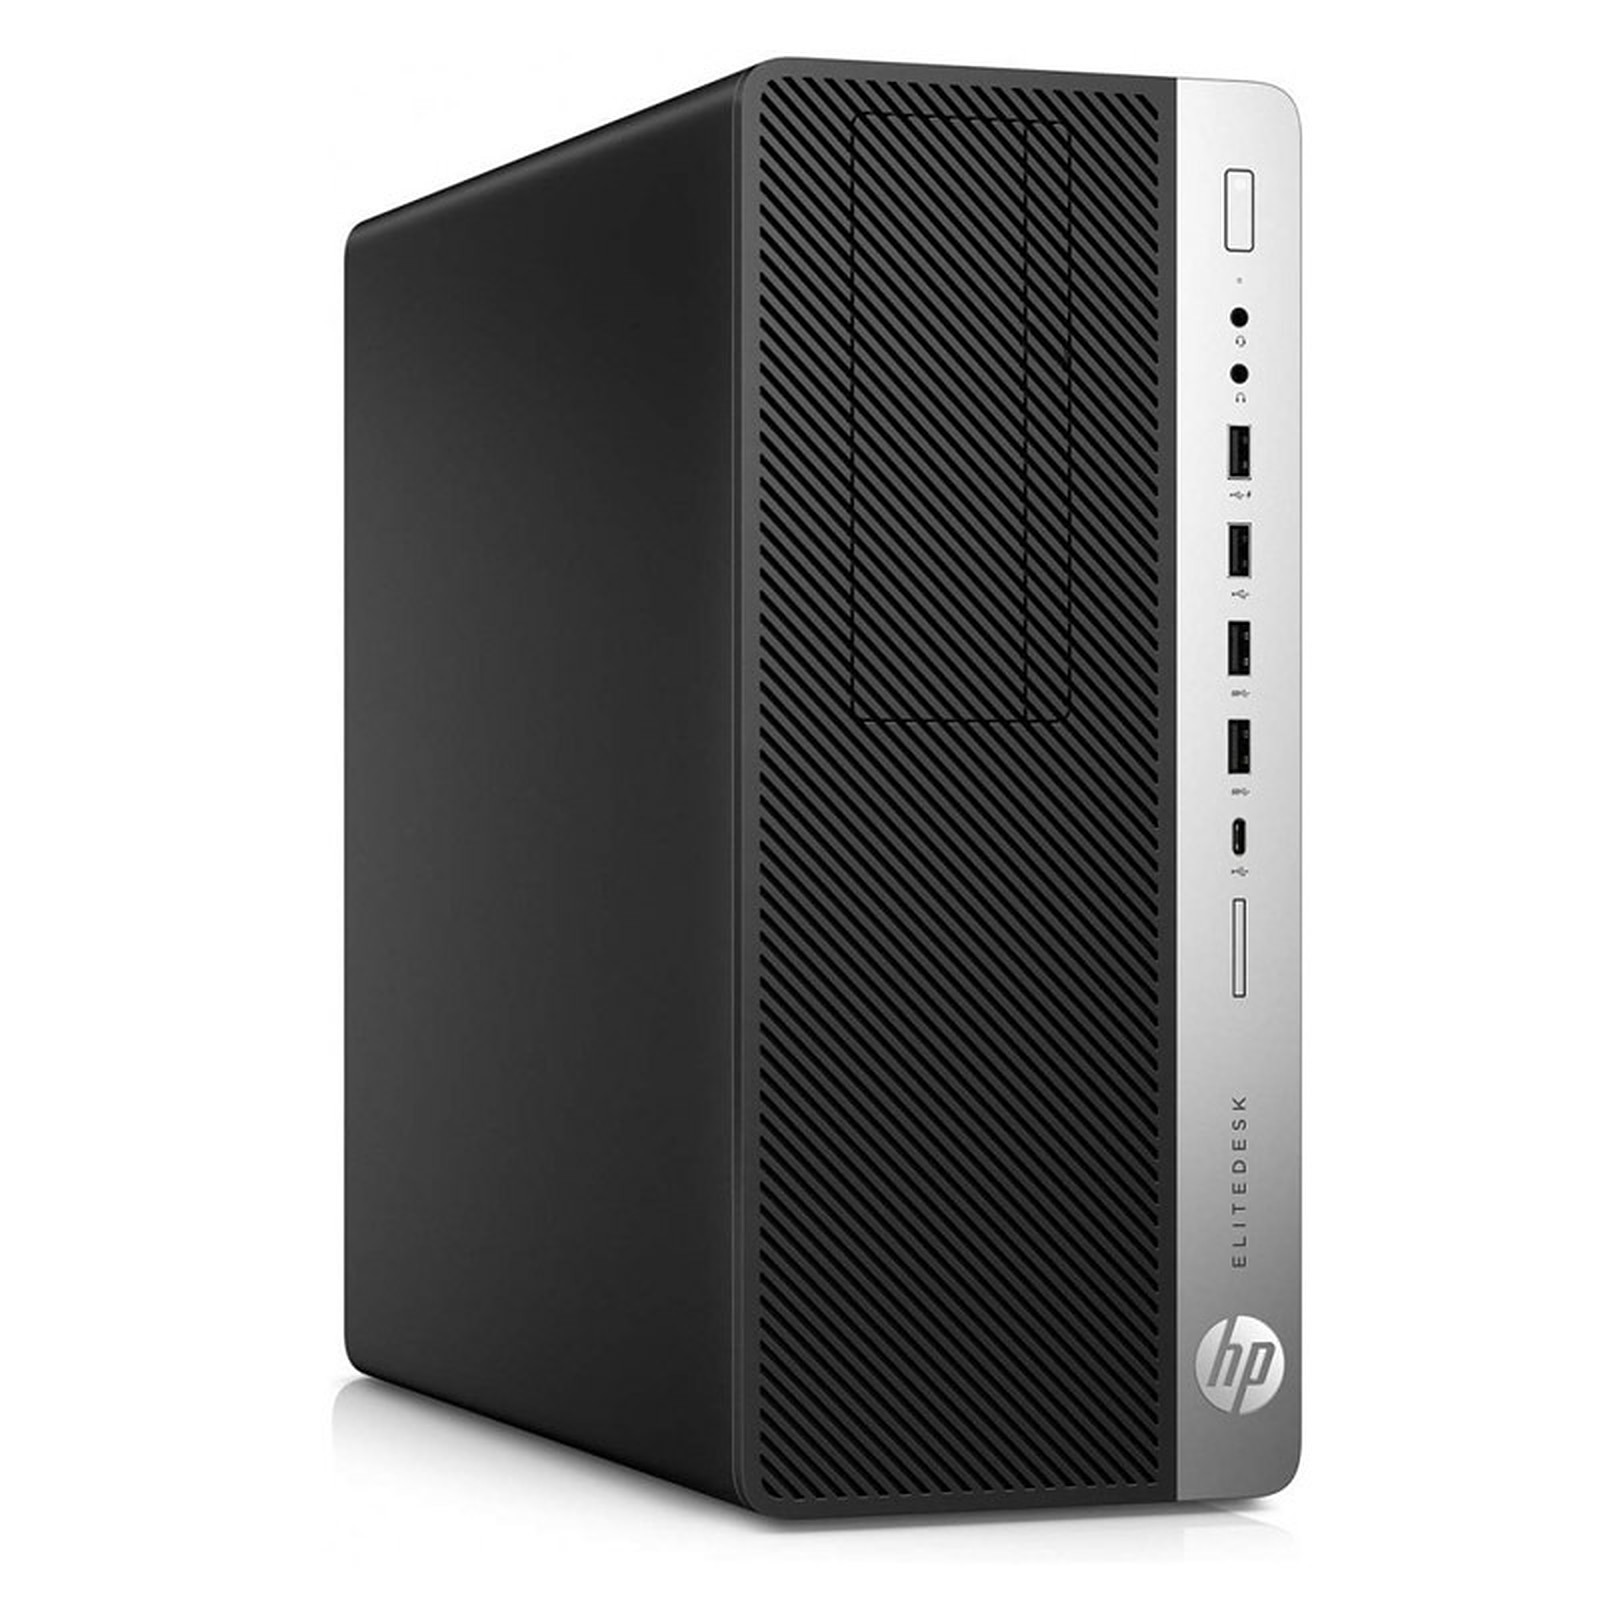 HP EliteDesk 800 G3 TWR (I56542) · Reconditionne - PC de bureau reconditionne HP